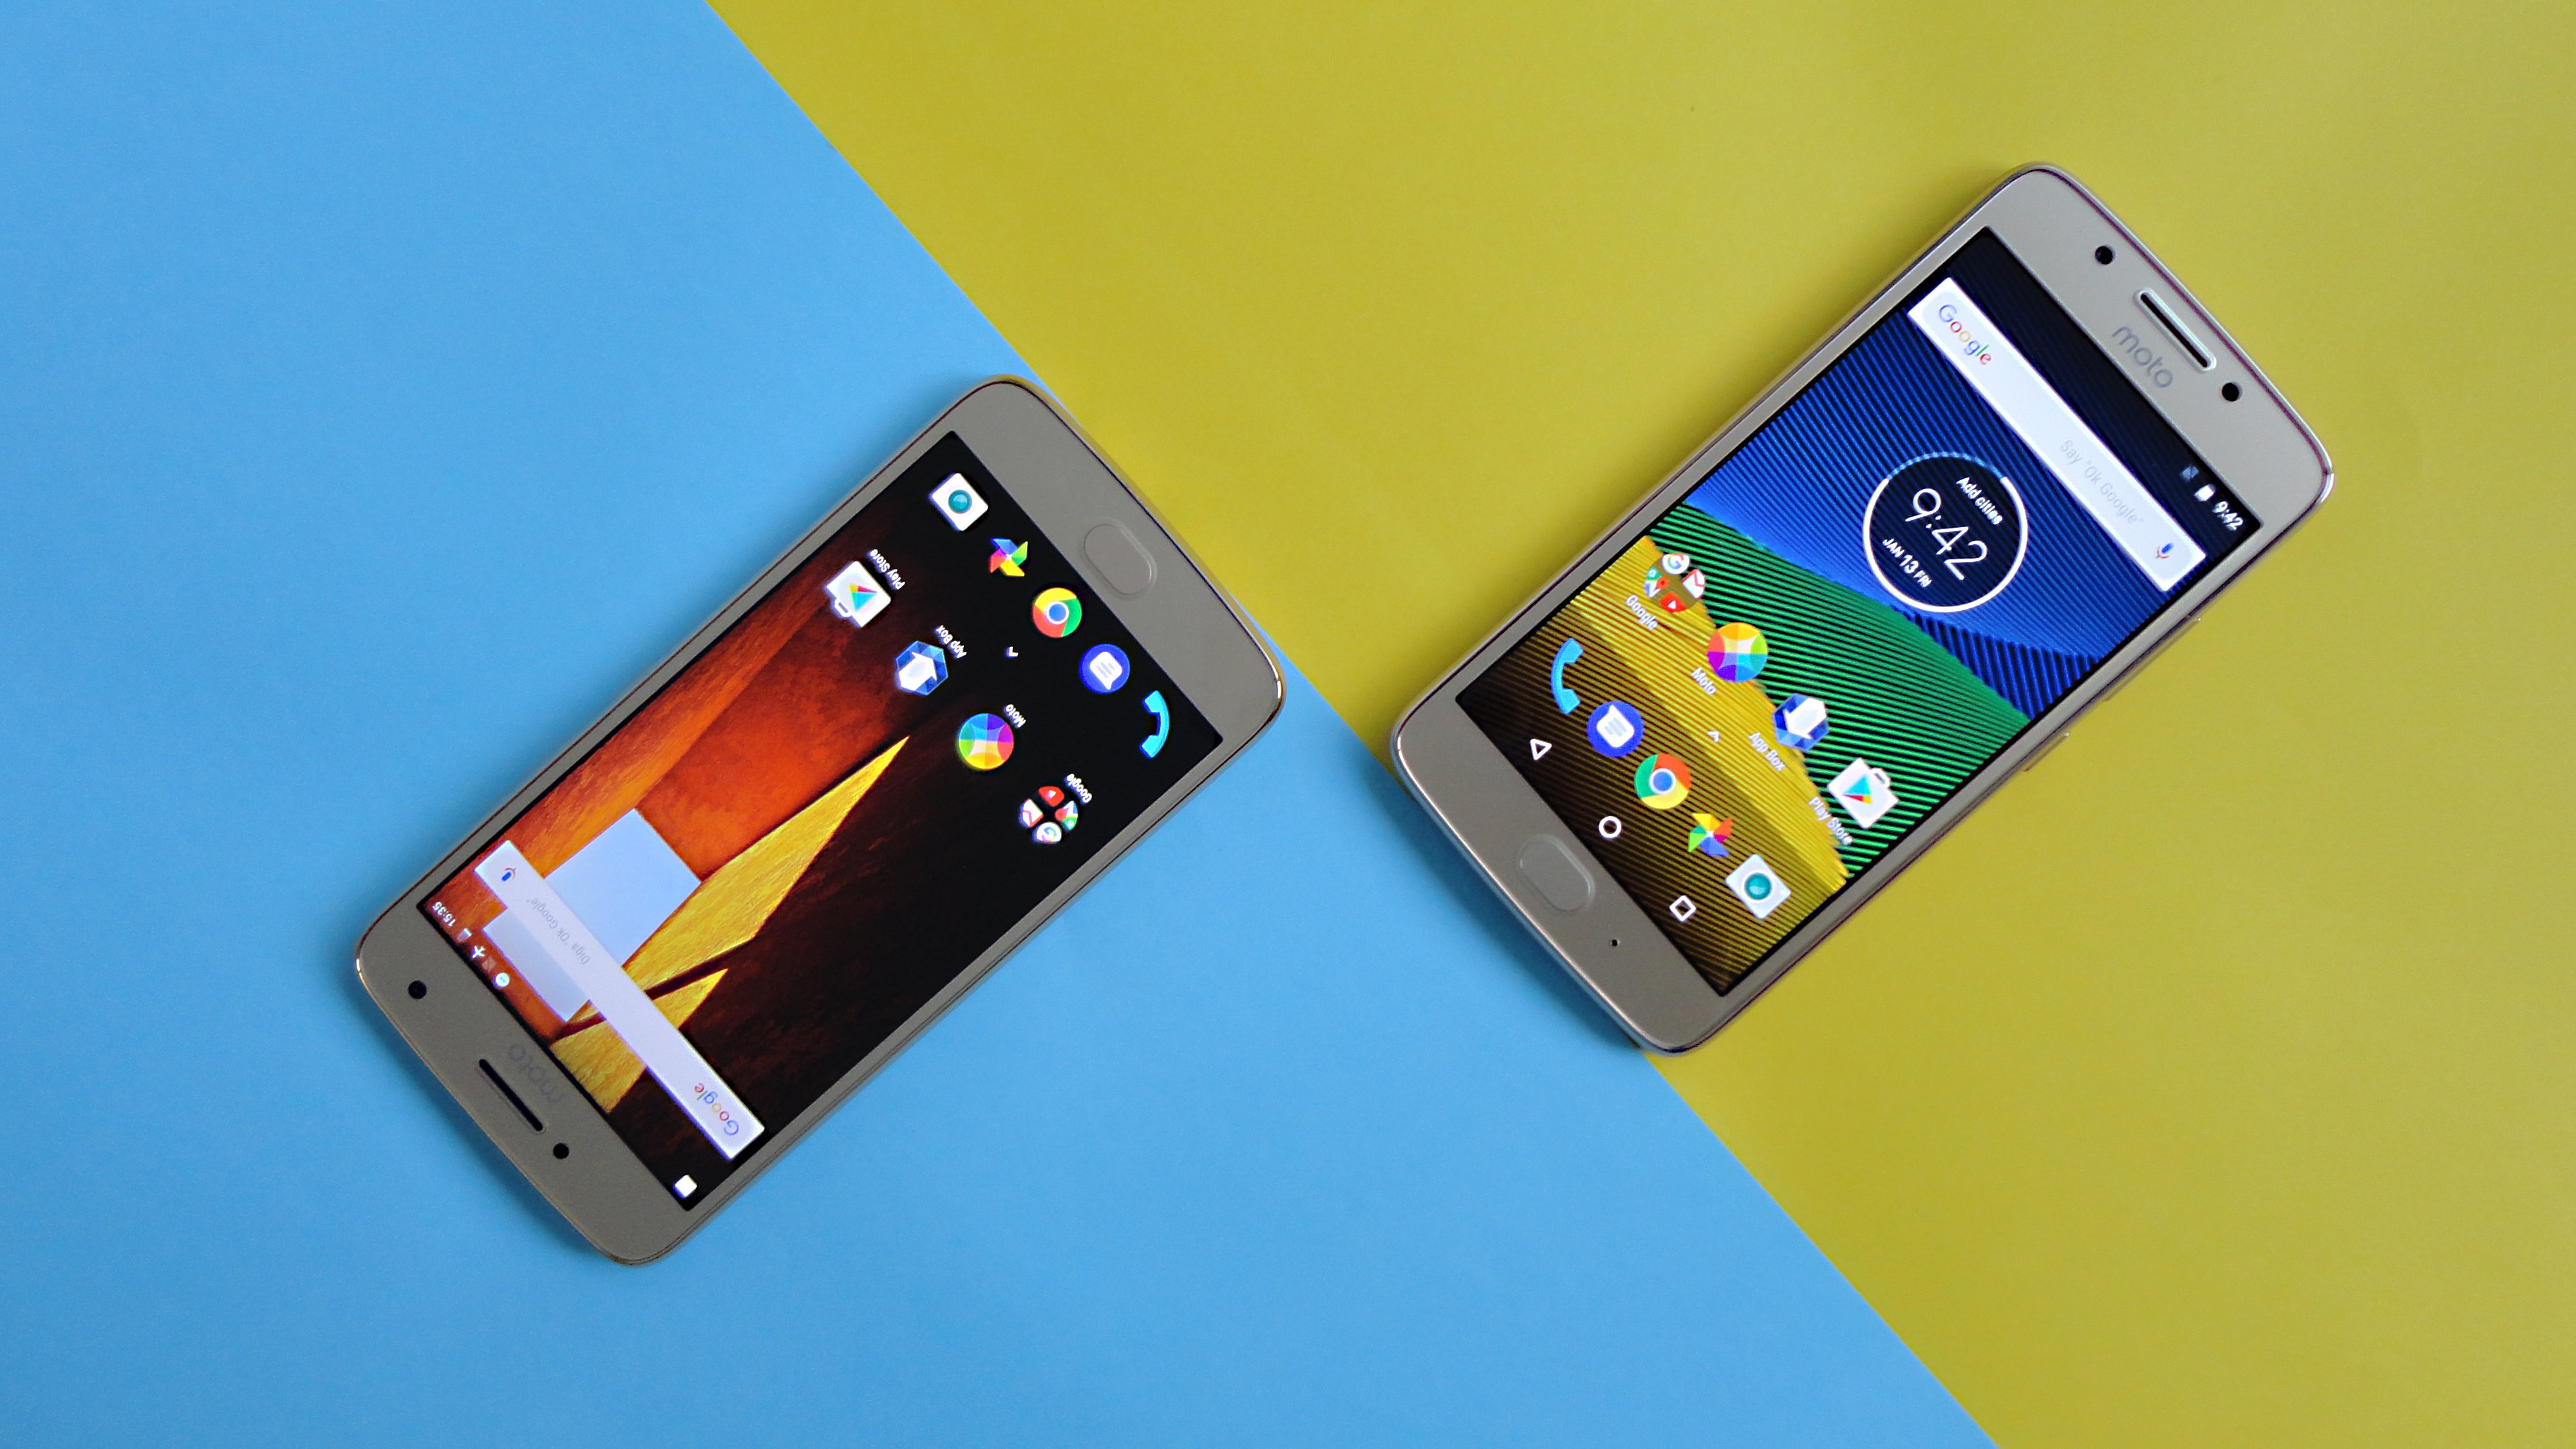 Moto G4 e Moto G4 Plus começam a receber versão de testes do Android 8.1  Oreo 